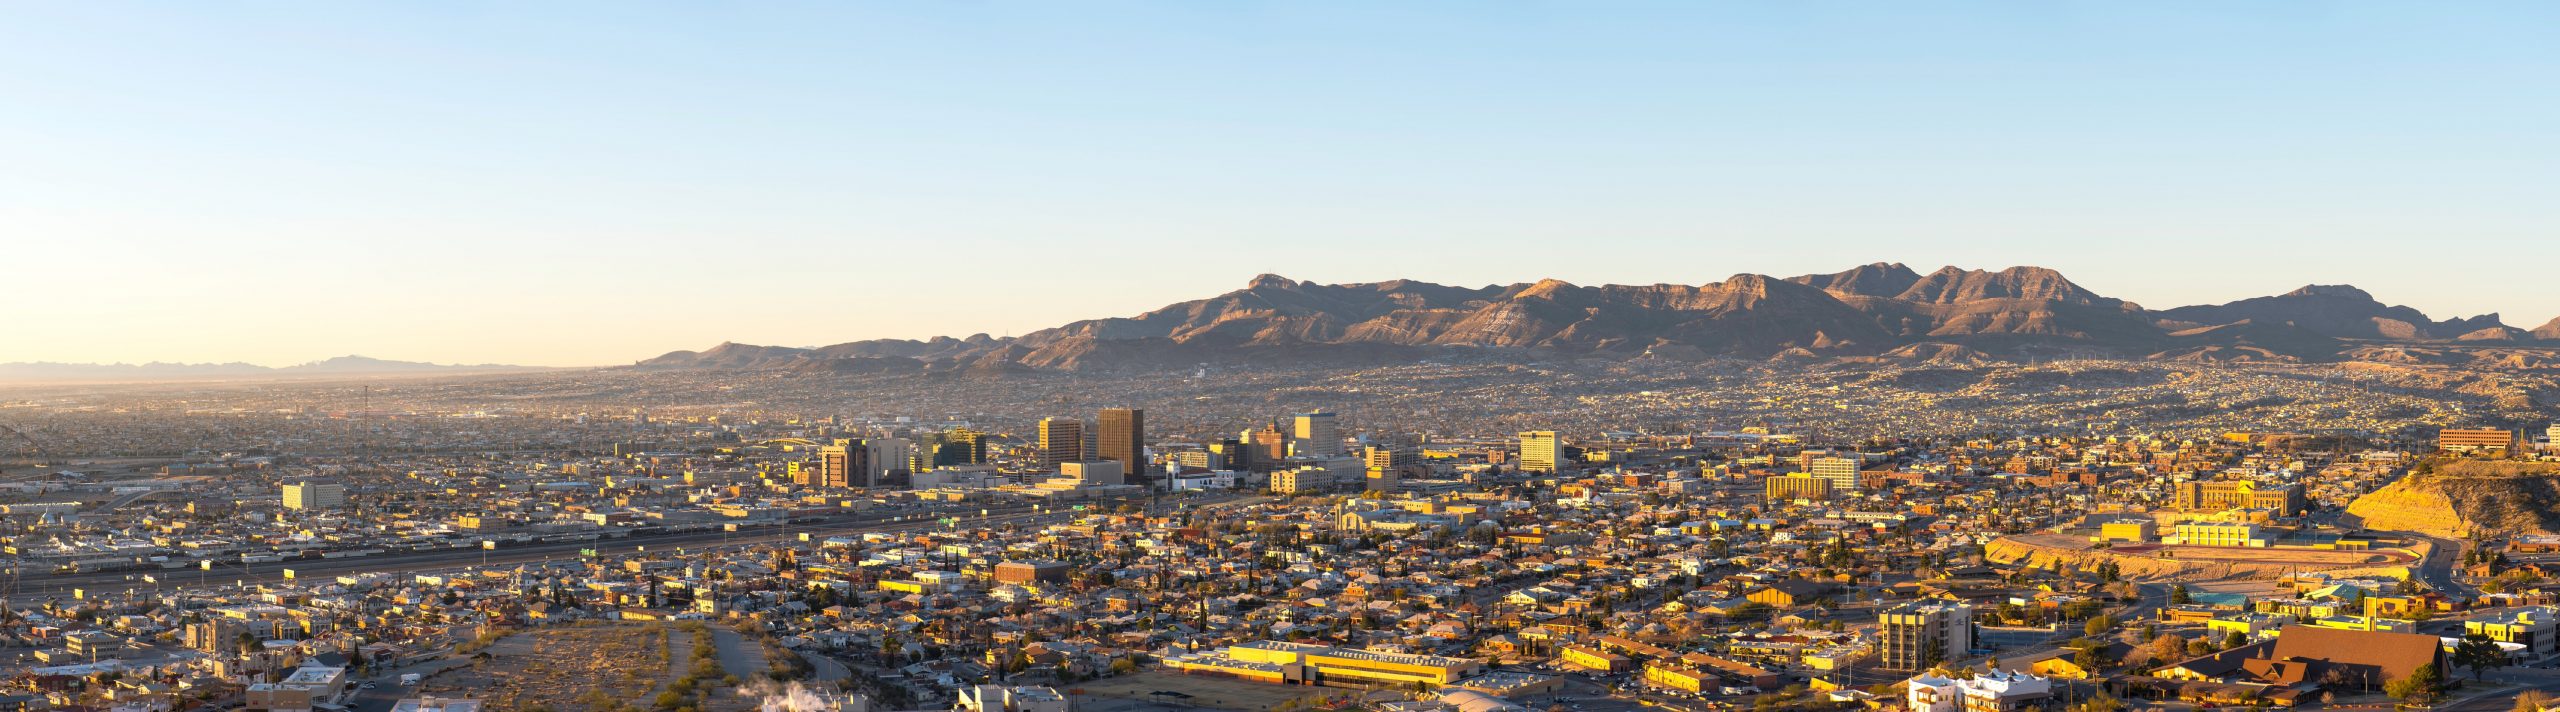 Early morning Panorama of El Paso and Ciudad de Juarez